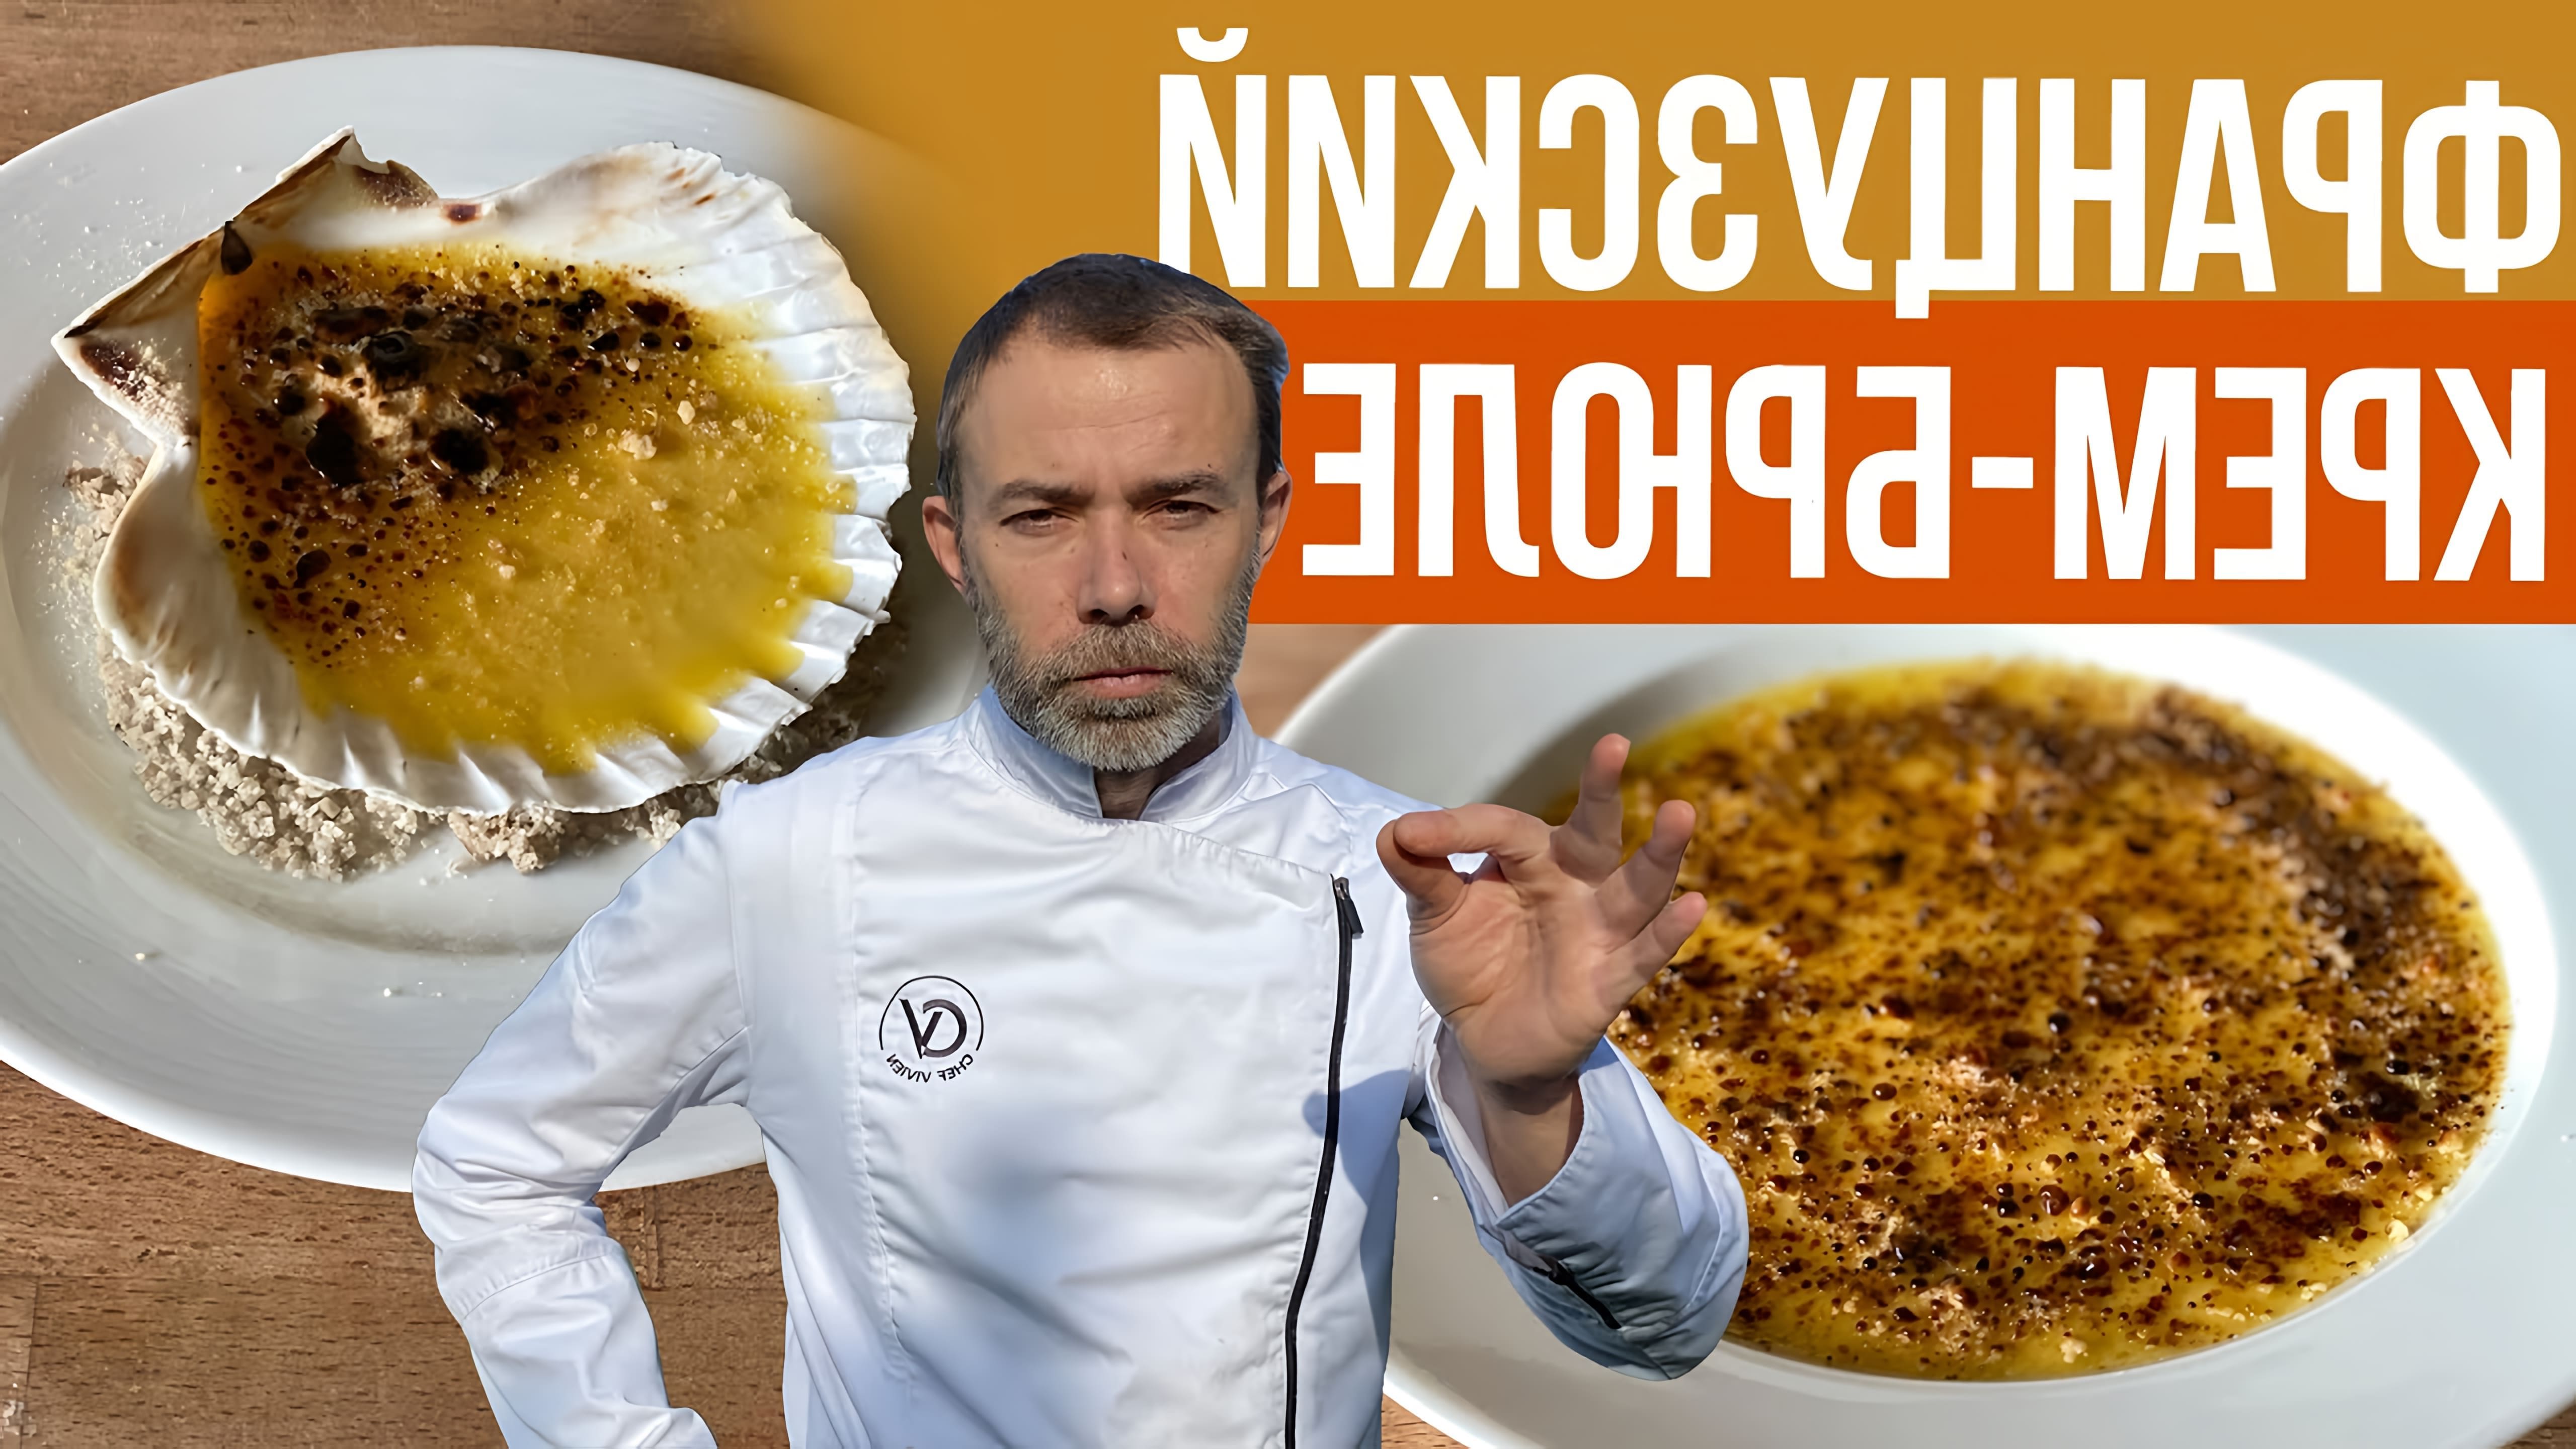 В этом видео-ролике французский шеф-повар демонстрирует процесс приготовления крем-брюле - одного из самых вкусных и популярных десертов